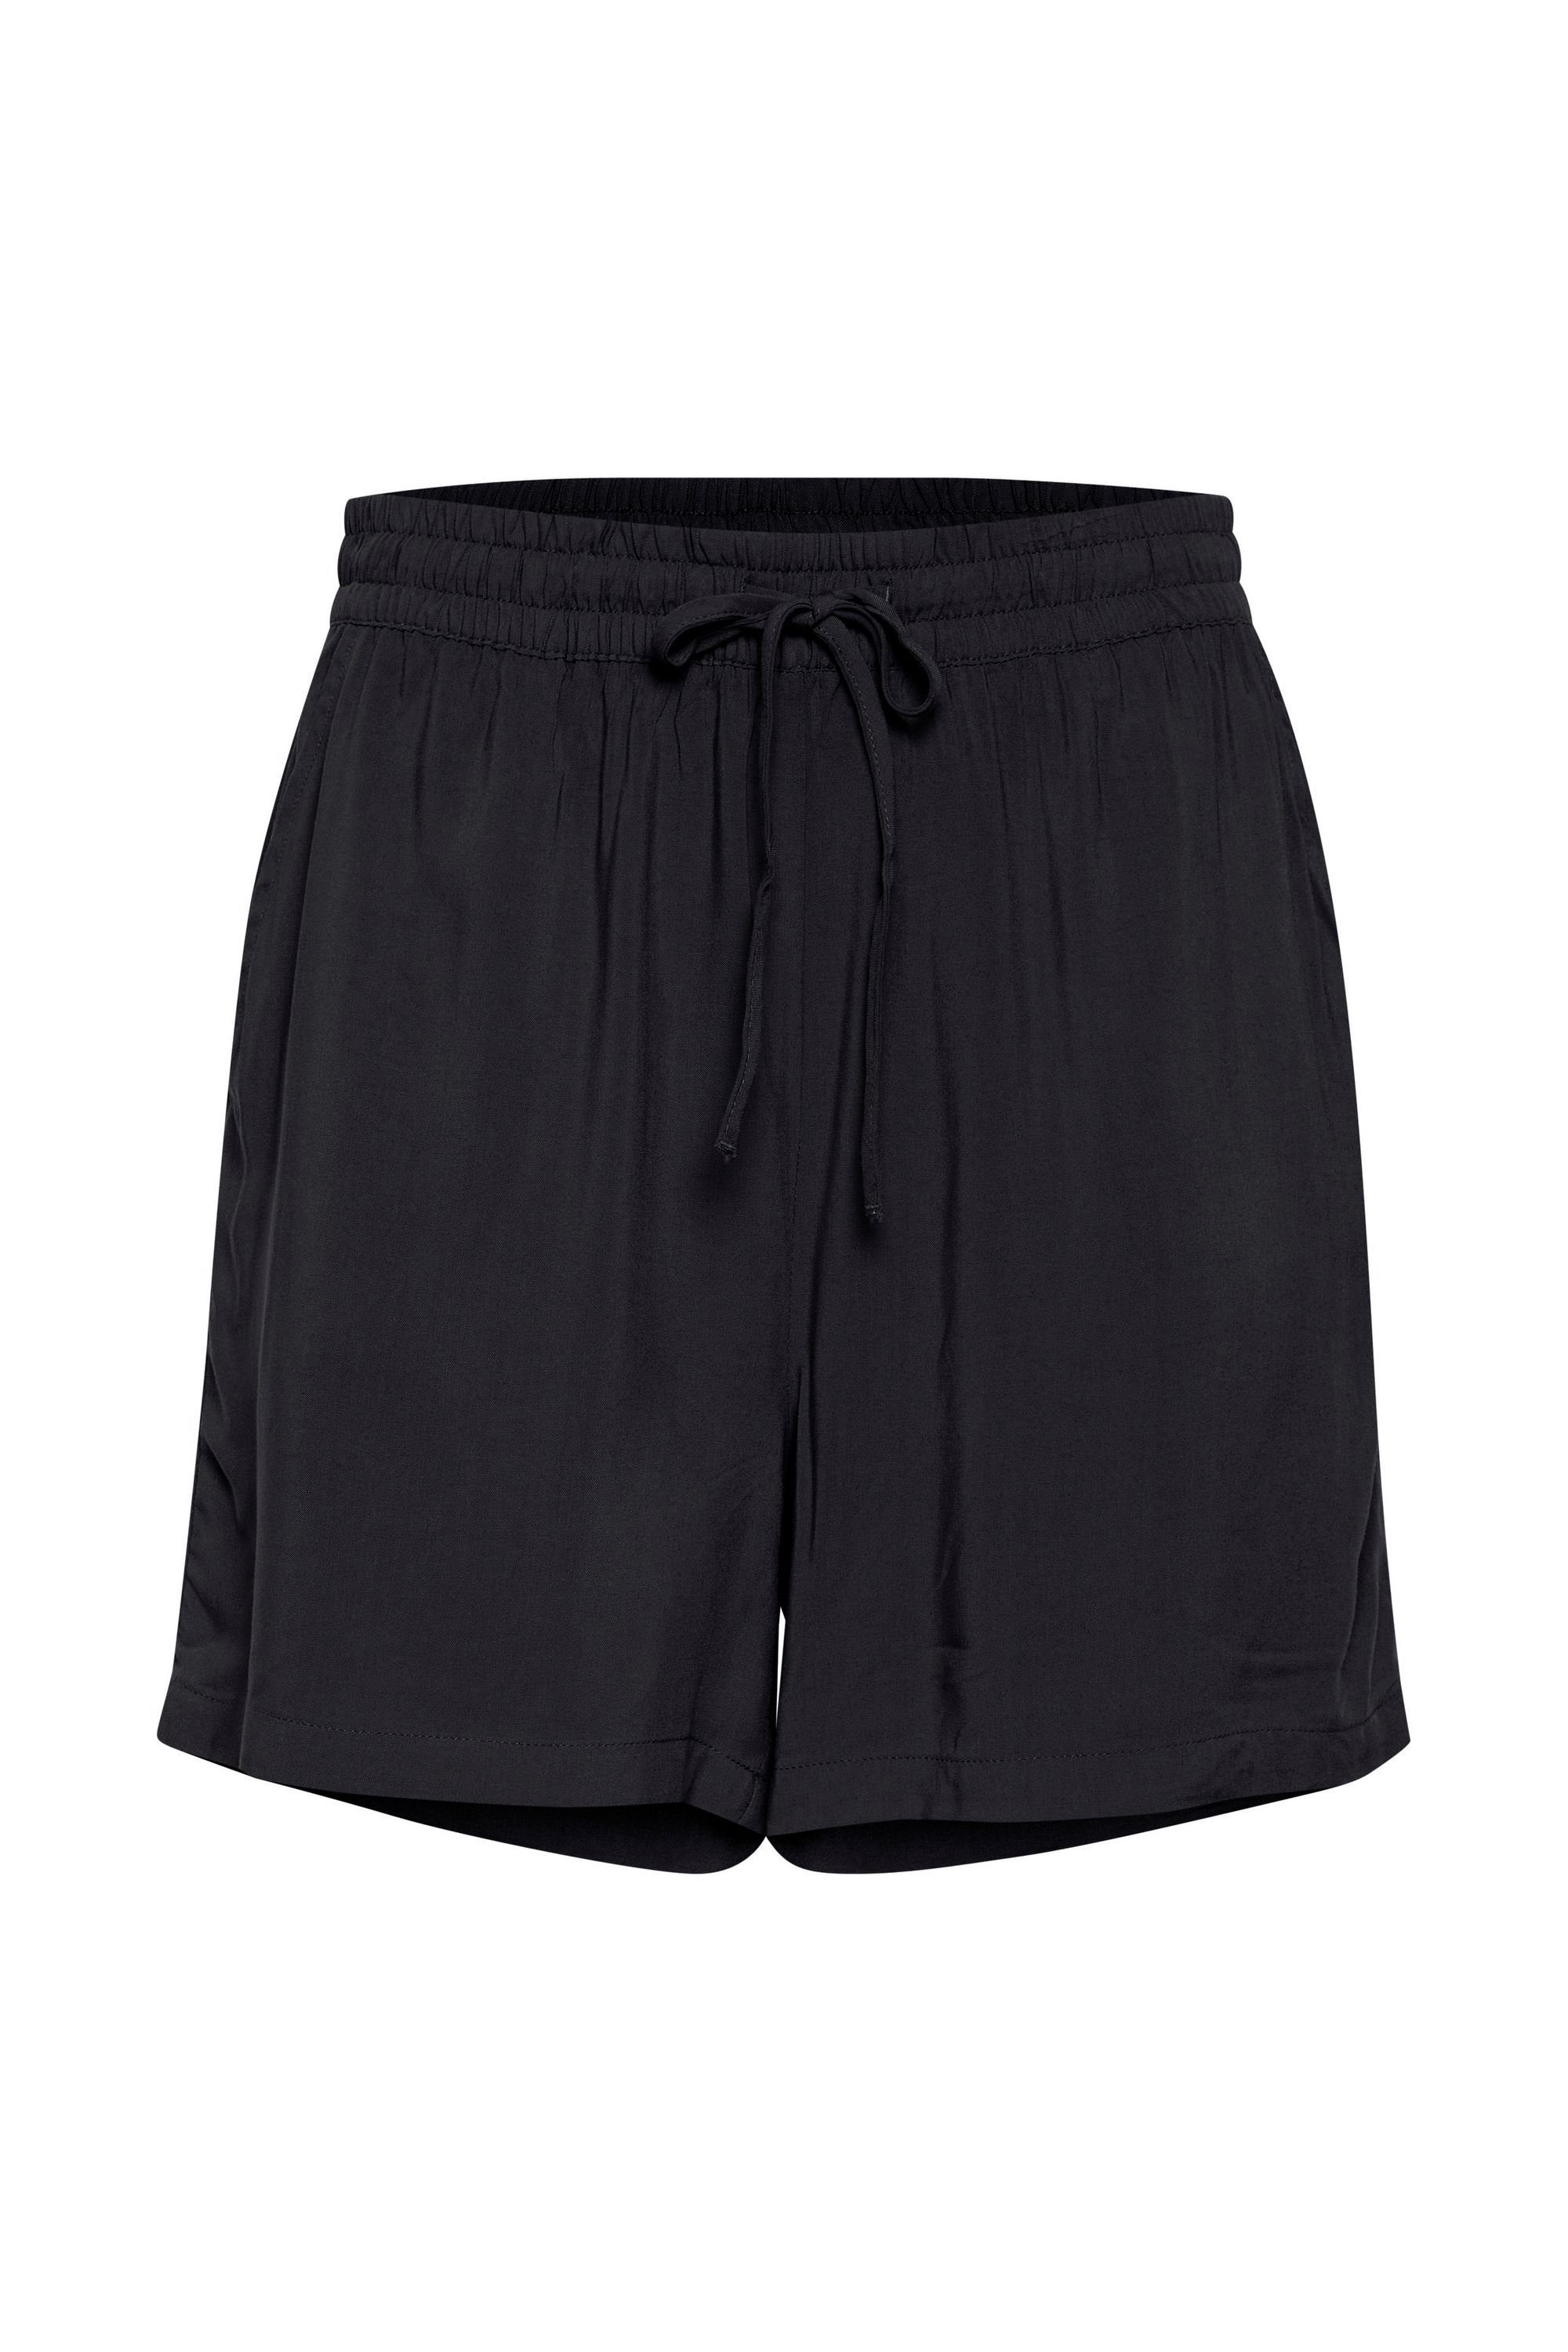 b.young Shorts BYMMJOELLA SHORTS - 20809730 Luftige Shorts mit Muster Black (200451) | Shorts